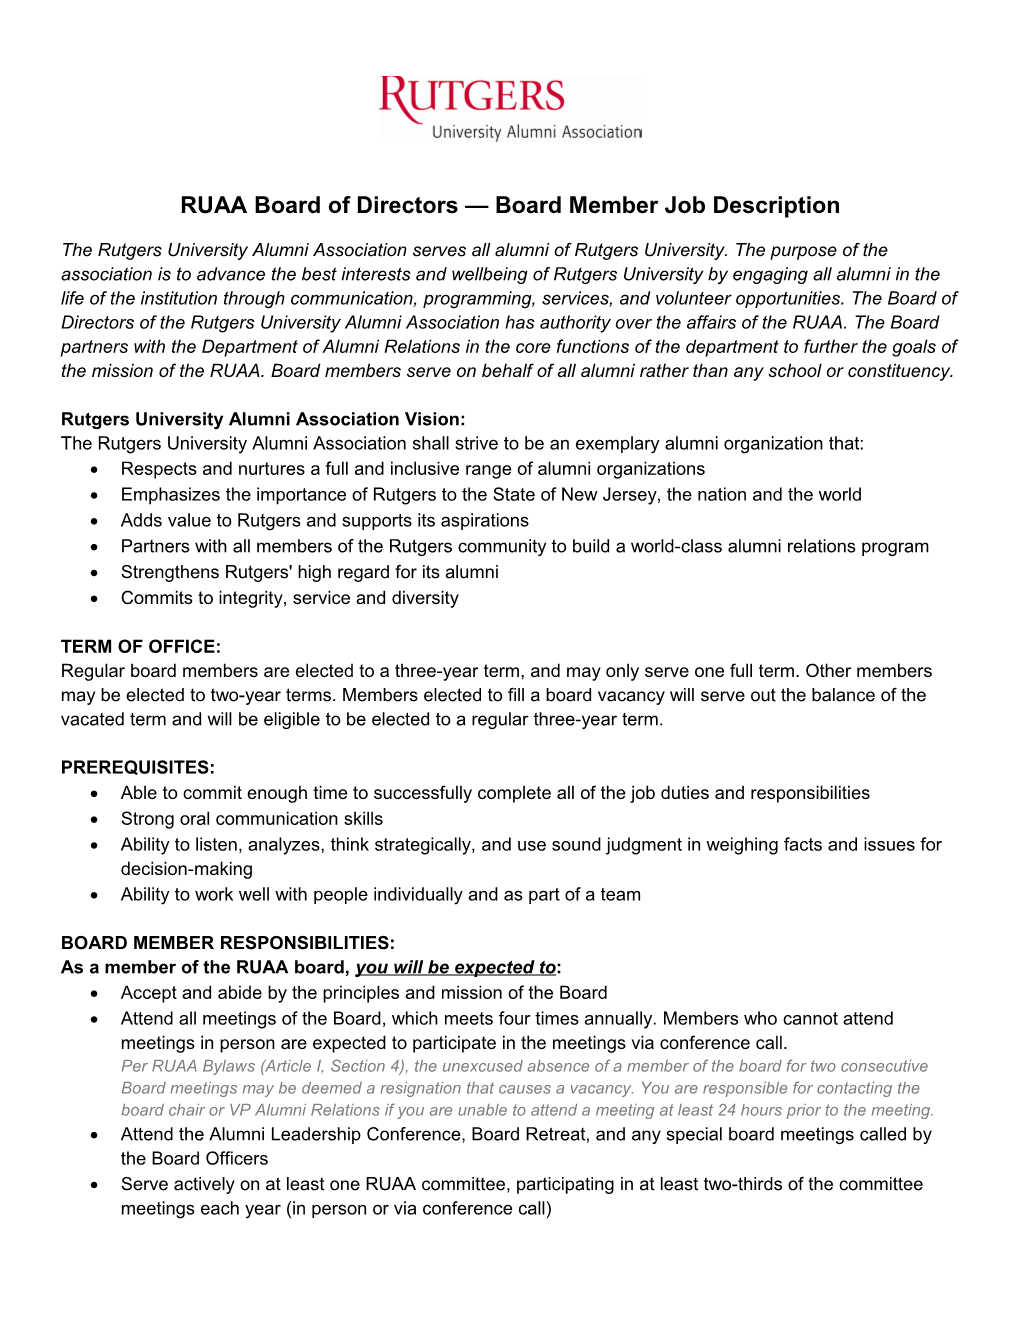 RUAA Board of Directors Board Member Job Description